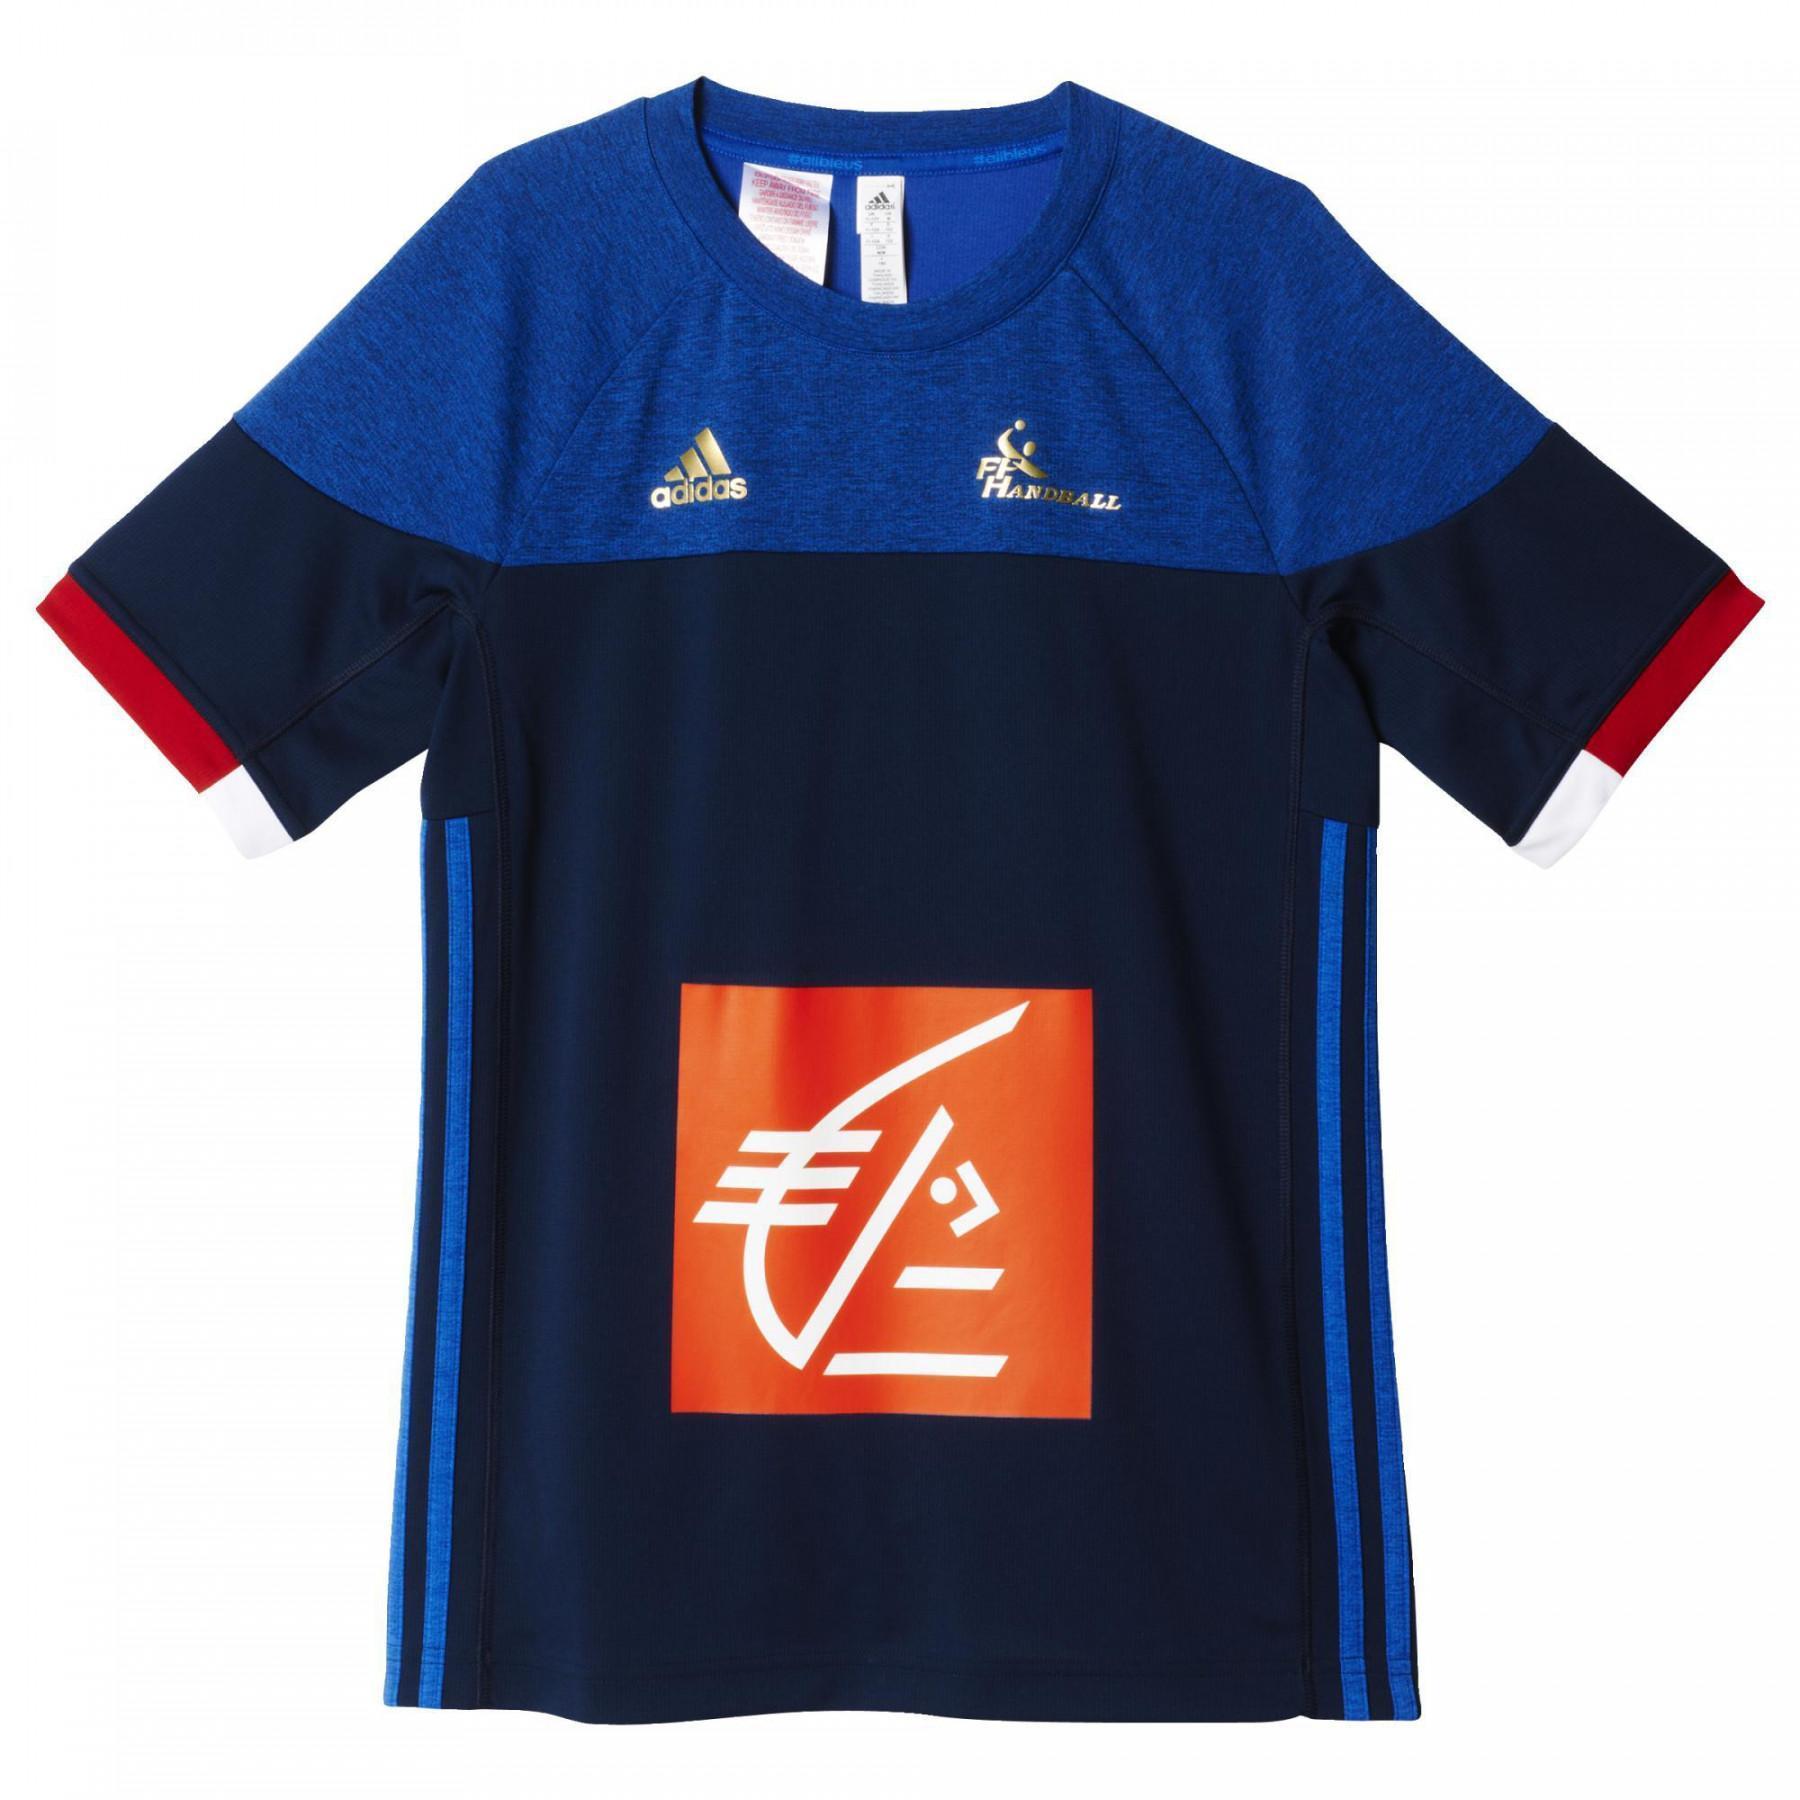 Children's jersey adidas équipe de France 2016